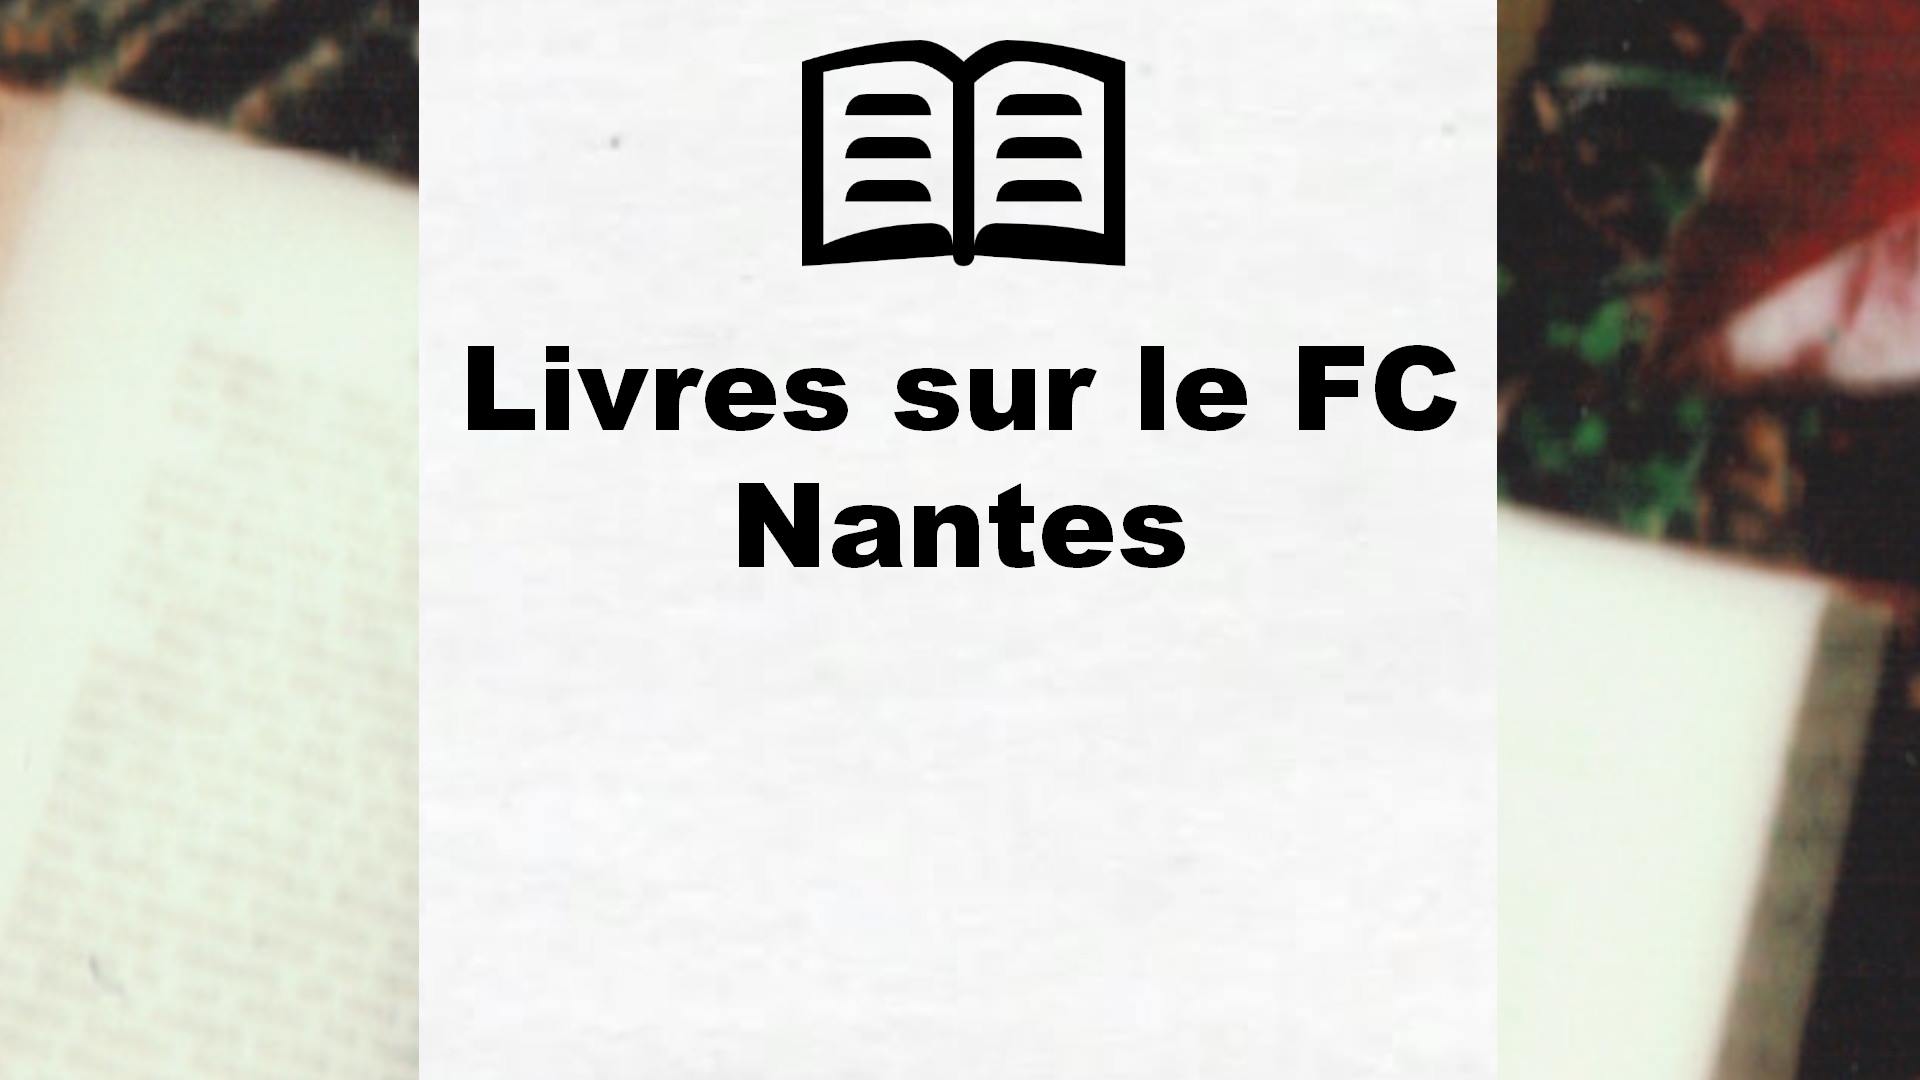 Livres sur le FC Nantes